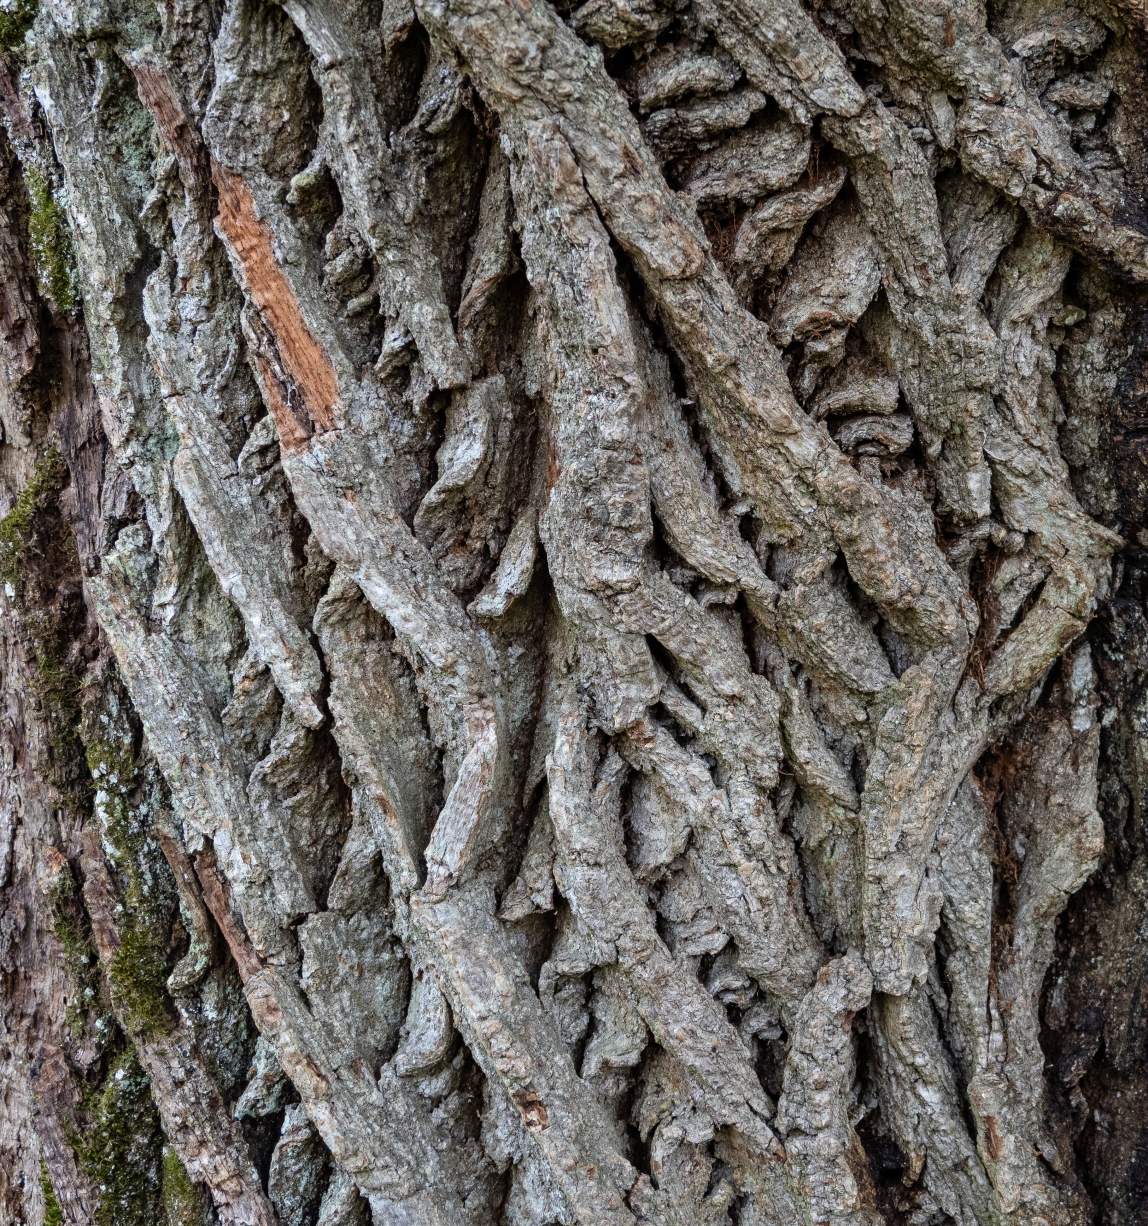 Close-up of oak bark